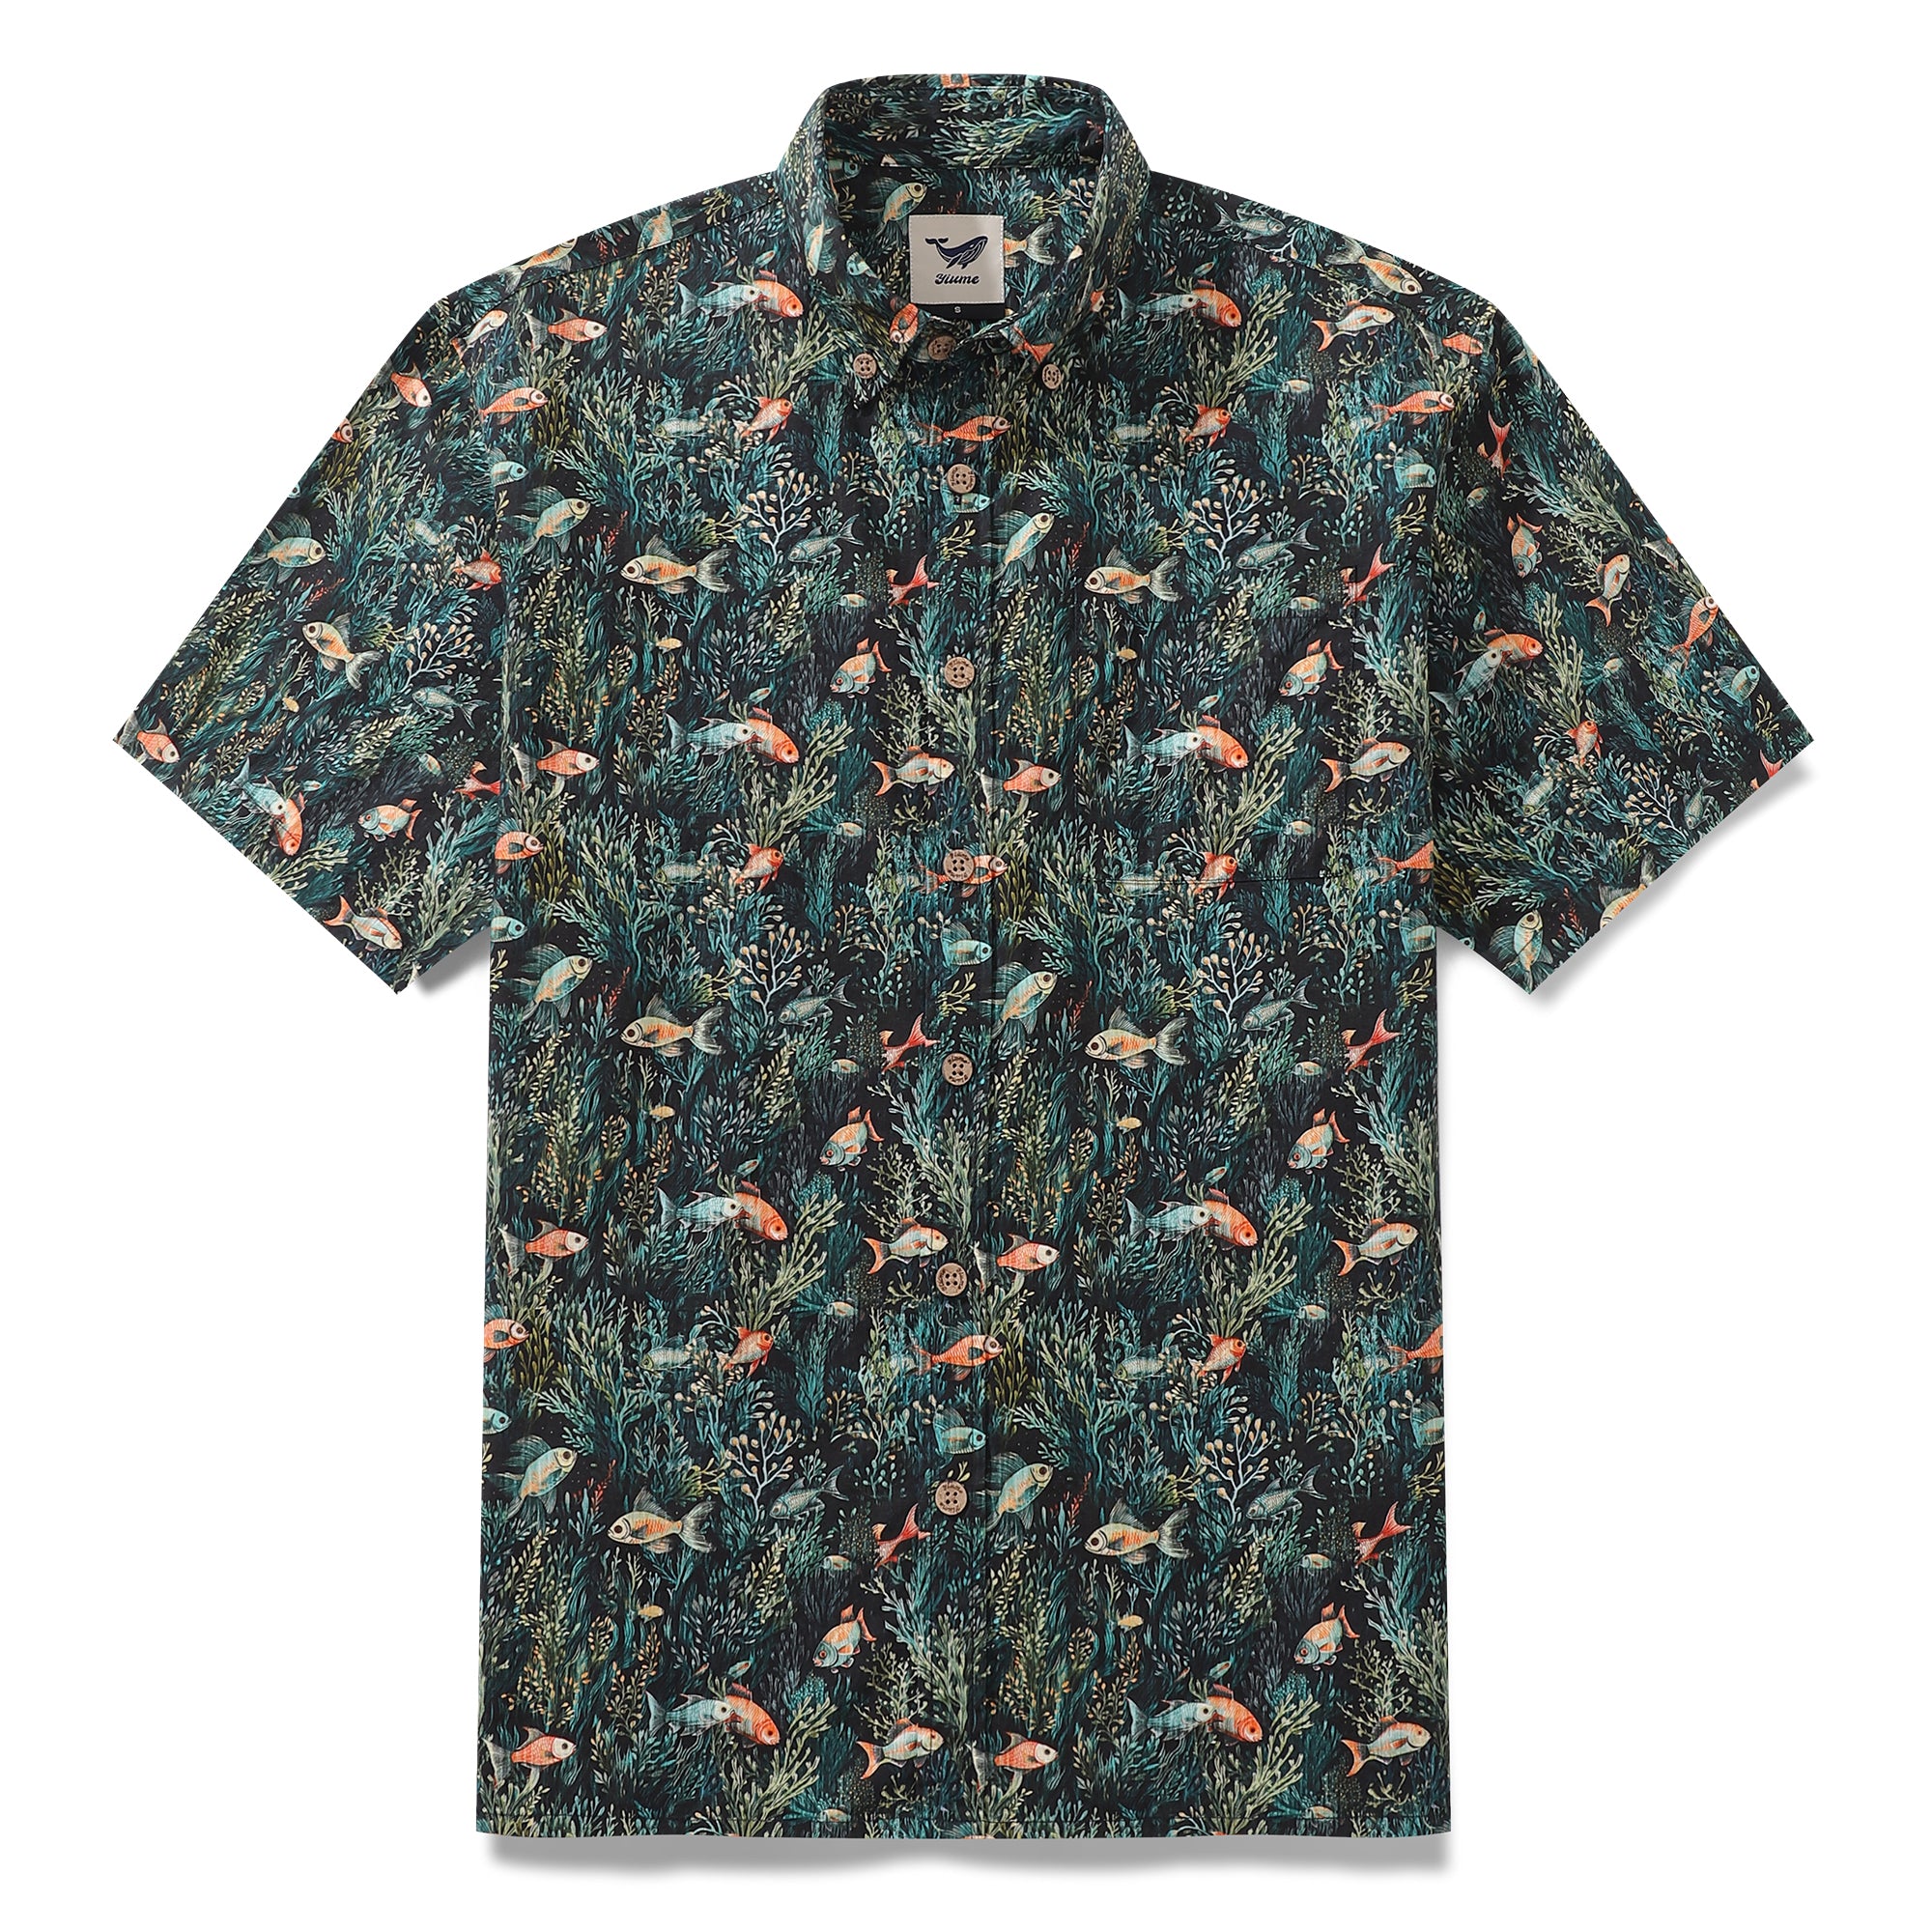 Camisa hawaiana para hombre Camisa Aloha de manga corta con botones de algodón con estampado bajo el mar